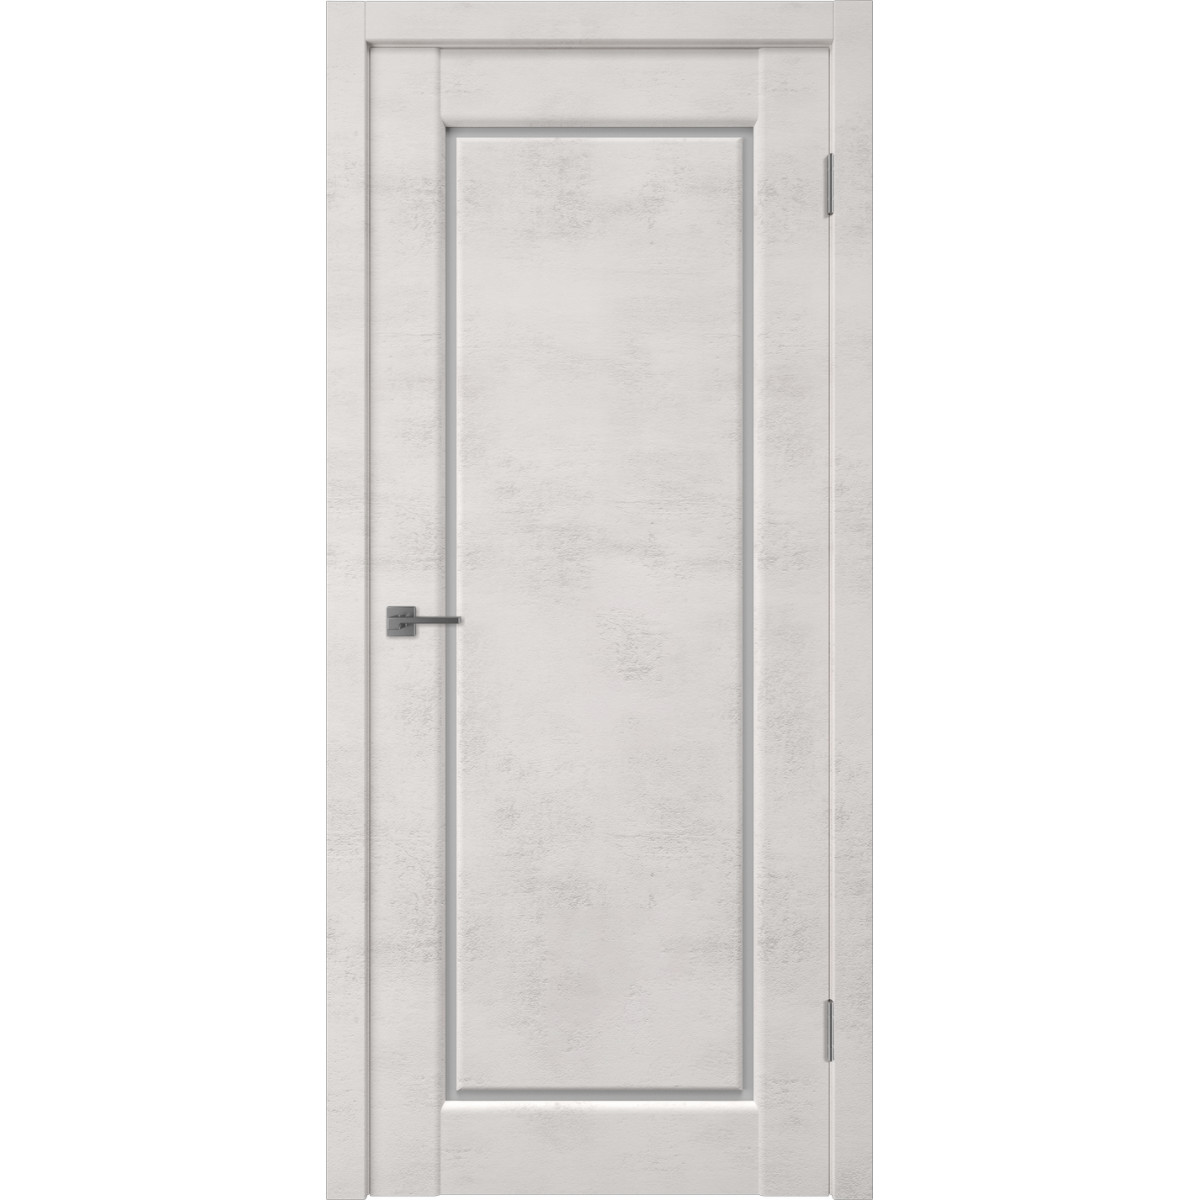 Дверь межкомнатная остеклённая Манхэттен 1 с фурнитурой 90х200 см, ПВХ, цвет лофт крем